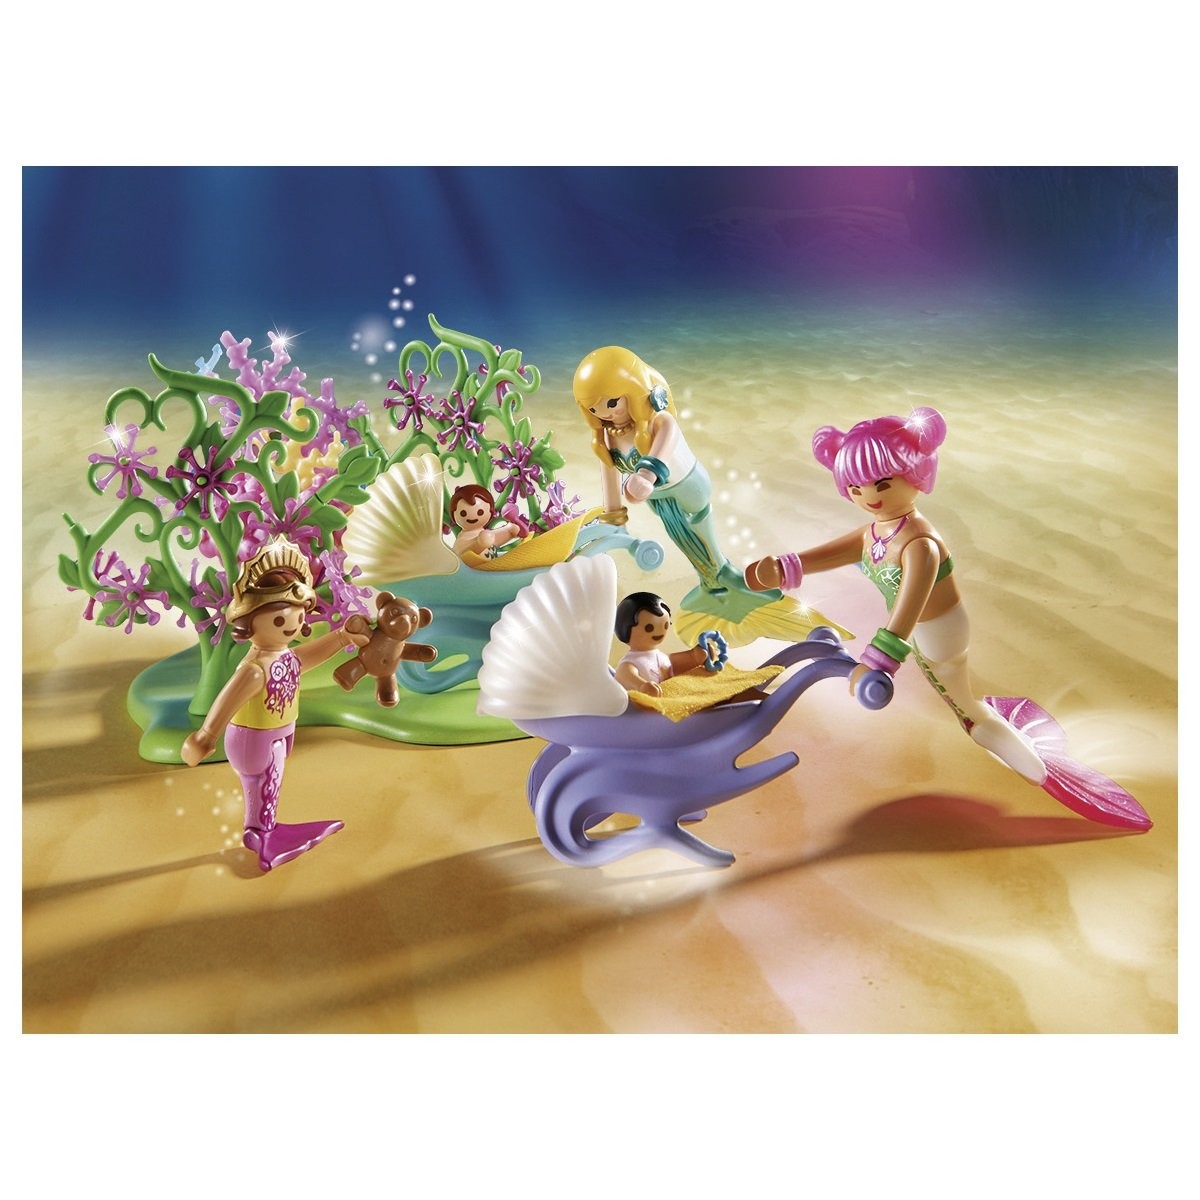 70886 - Playmobil Magic - Aire de jeux pour enfants sirènes